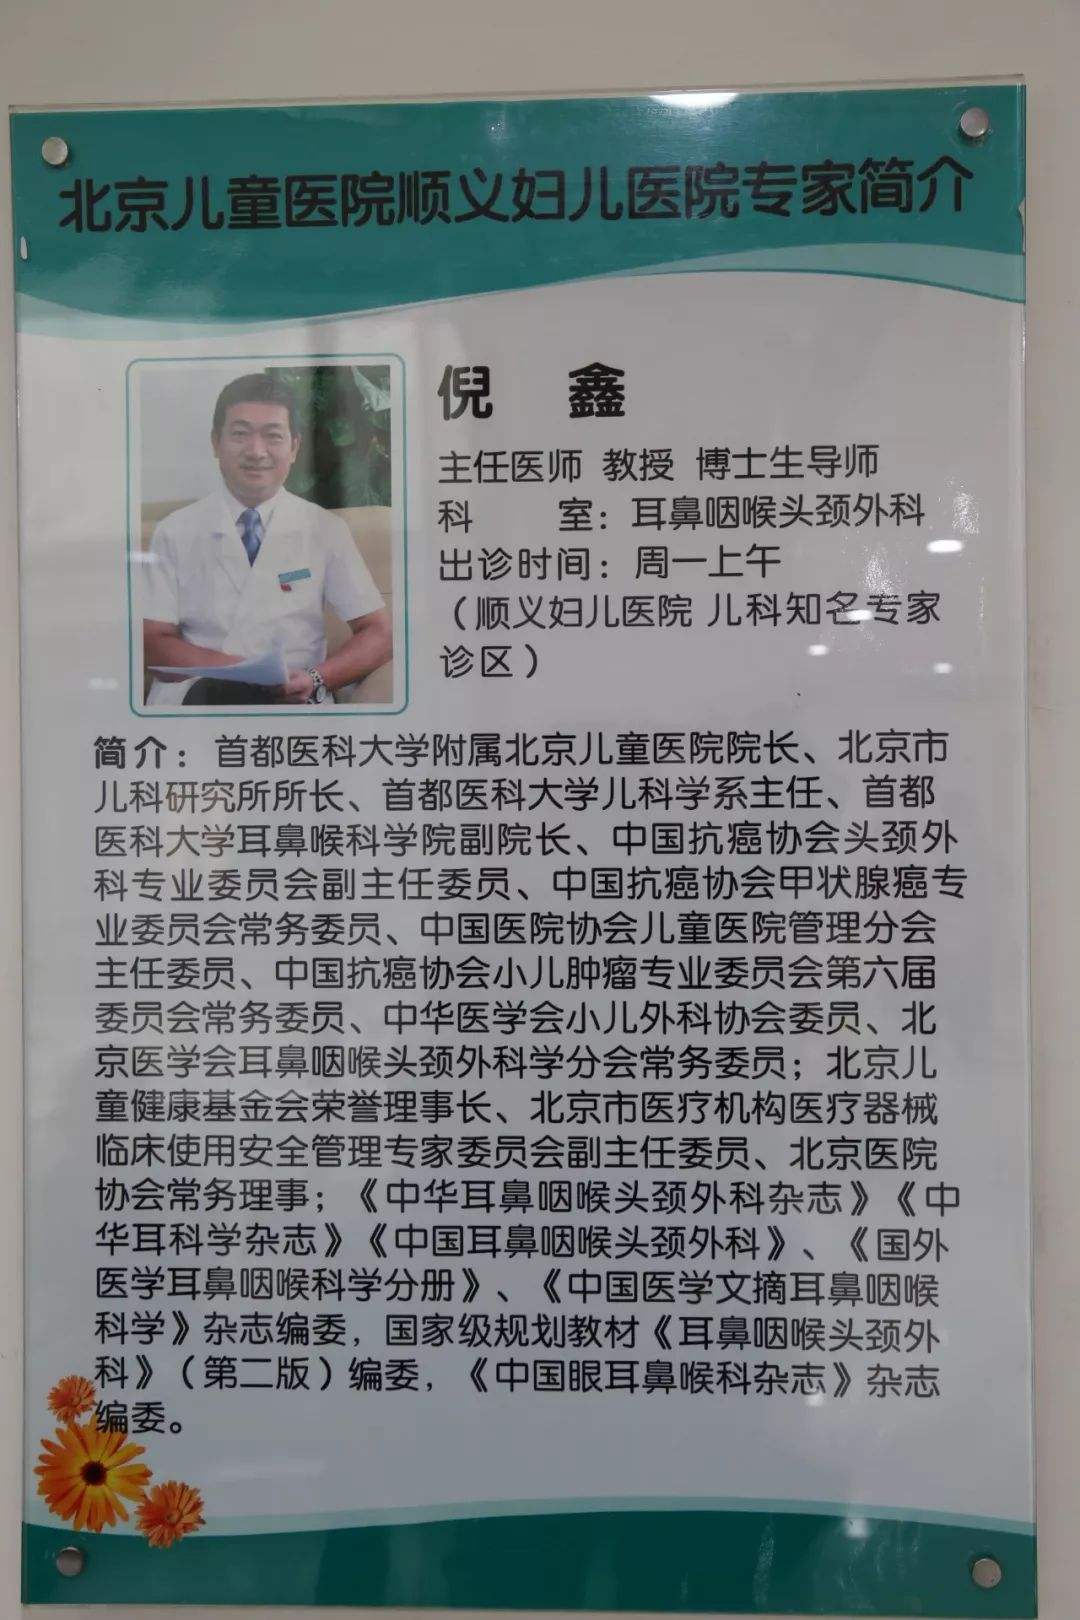 关于北京儿童医院代挂陪诊服务；坚定信心以硬干部硬作风硬措施全力以赴打赢本轮疫情防控硬仗的信息